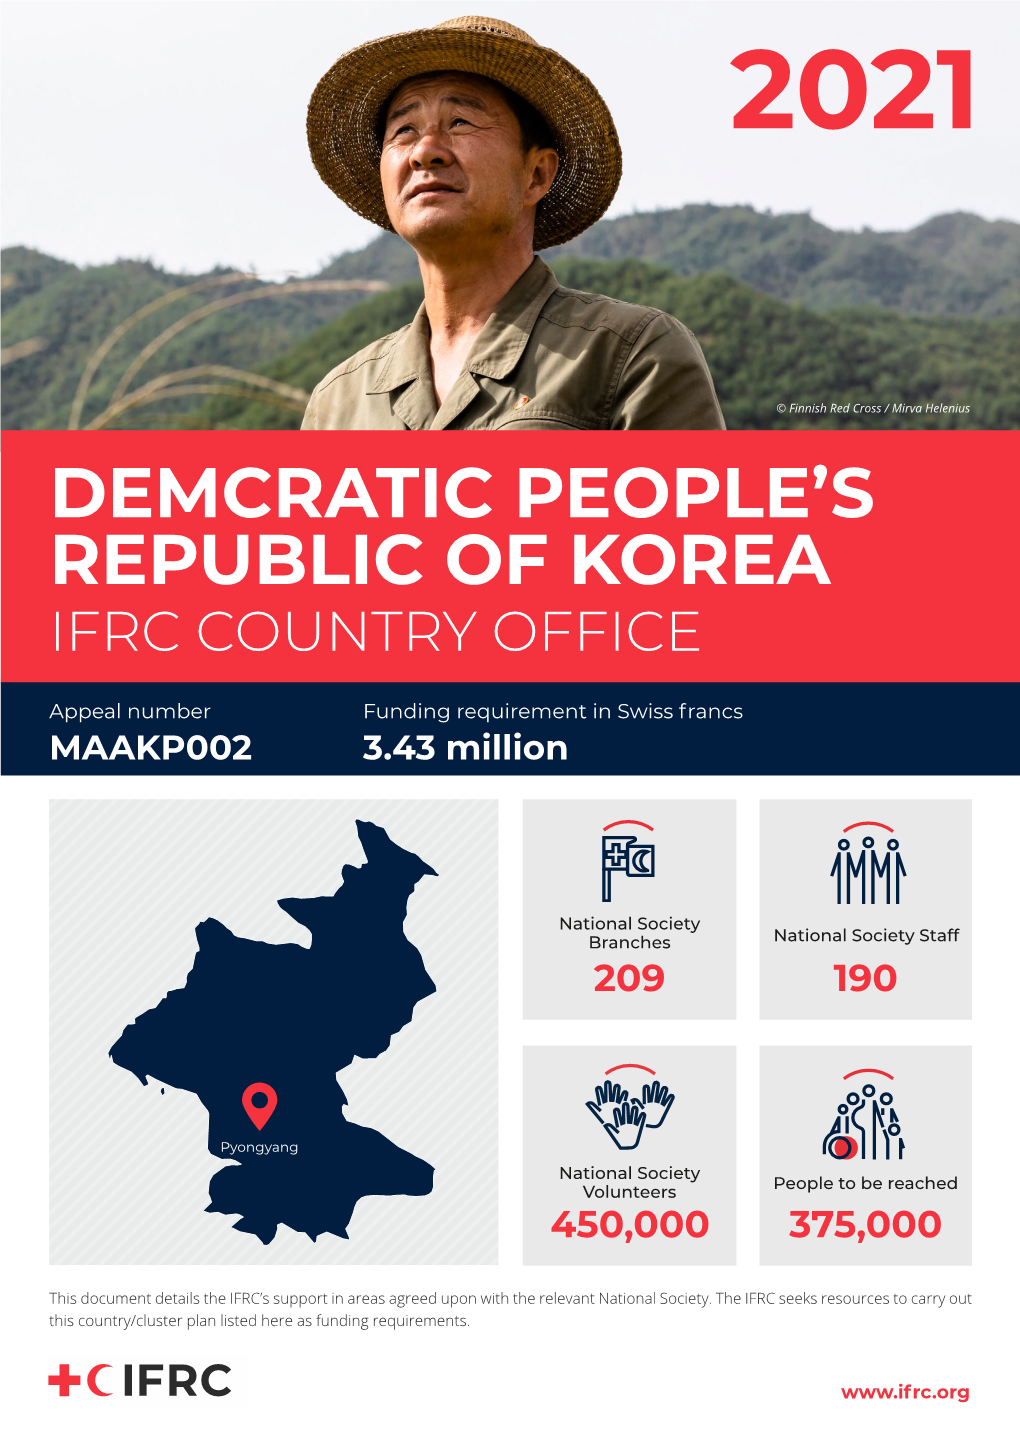 Demcratic People's Republic of Korea